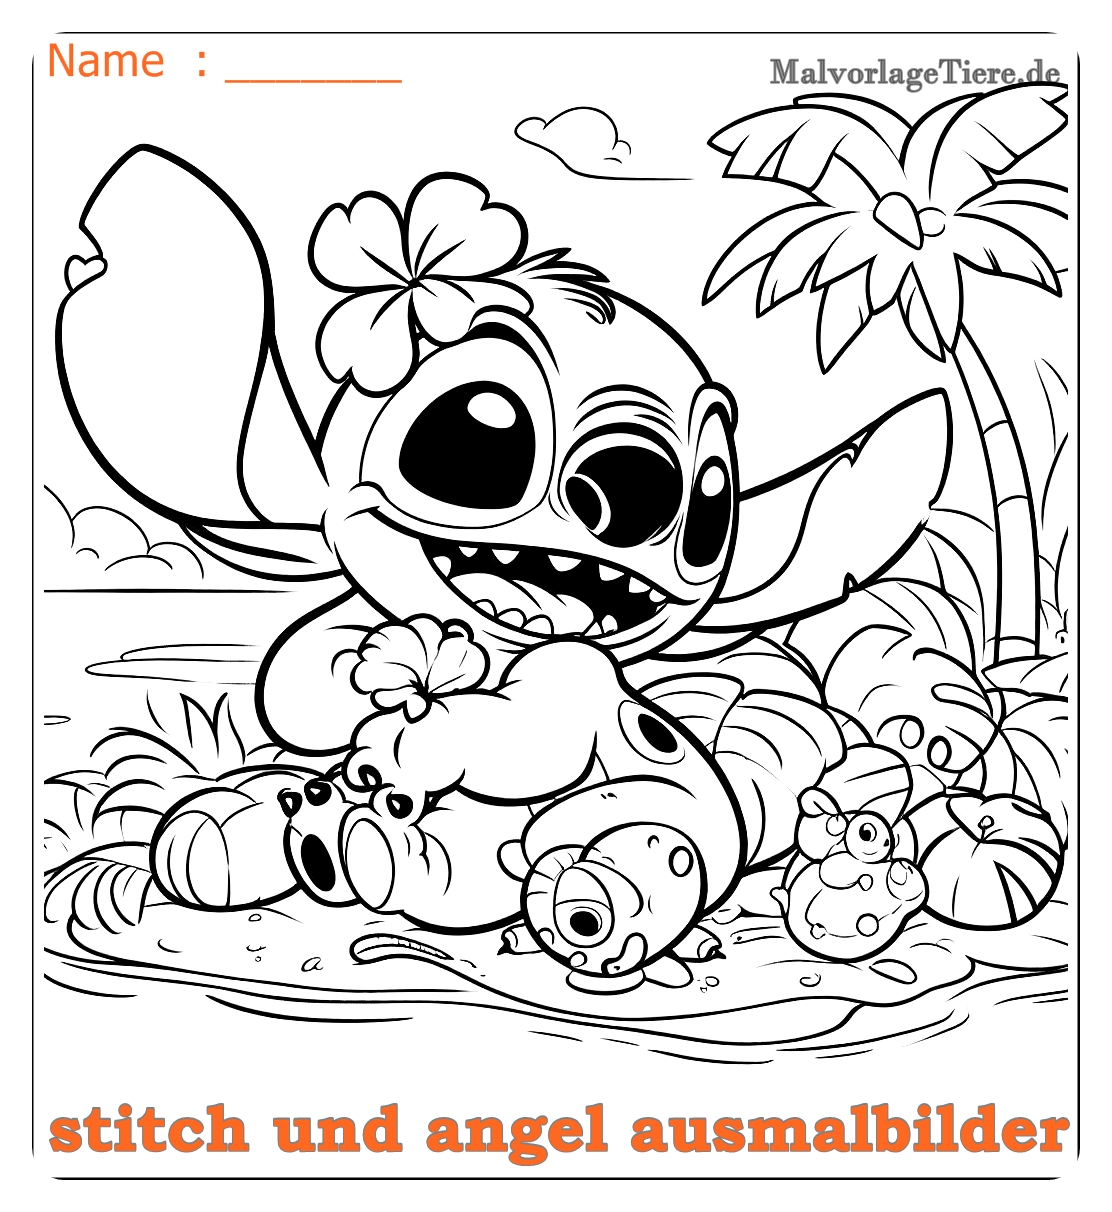 stitch und angel ausmalbilder05 by malvorlagetiere.de